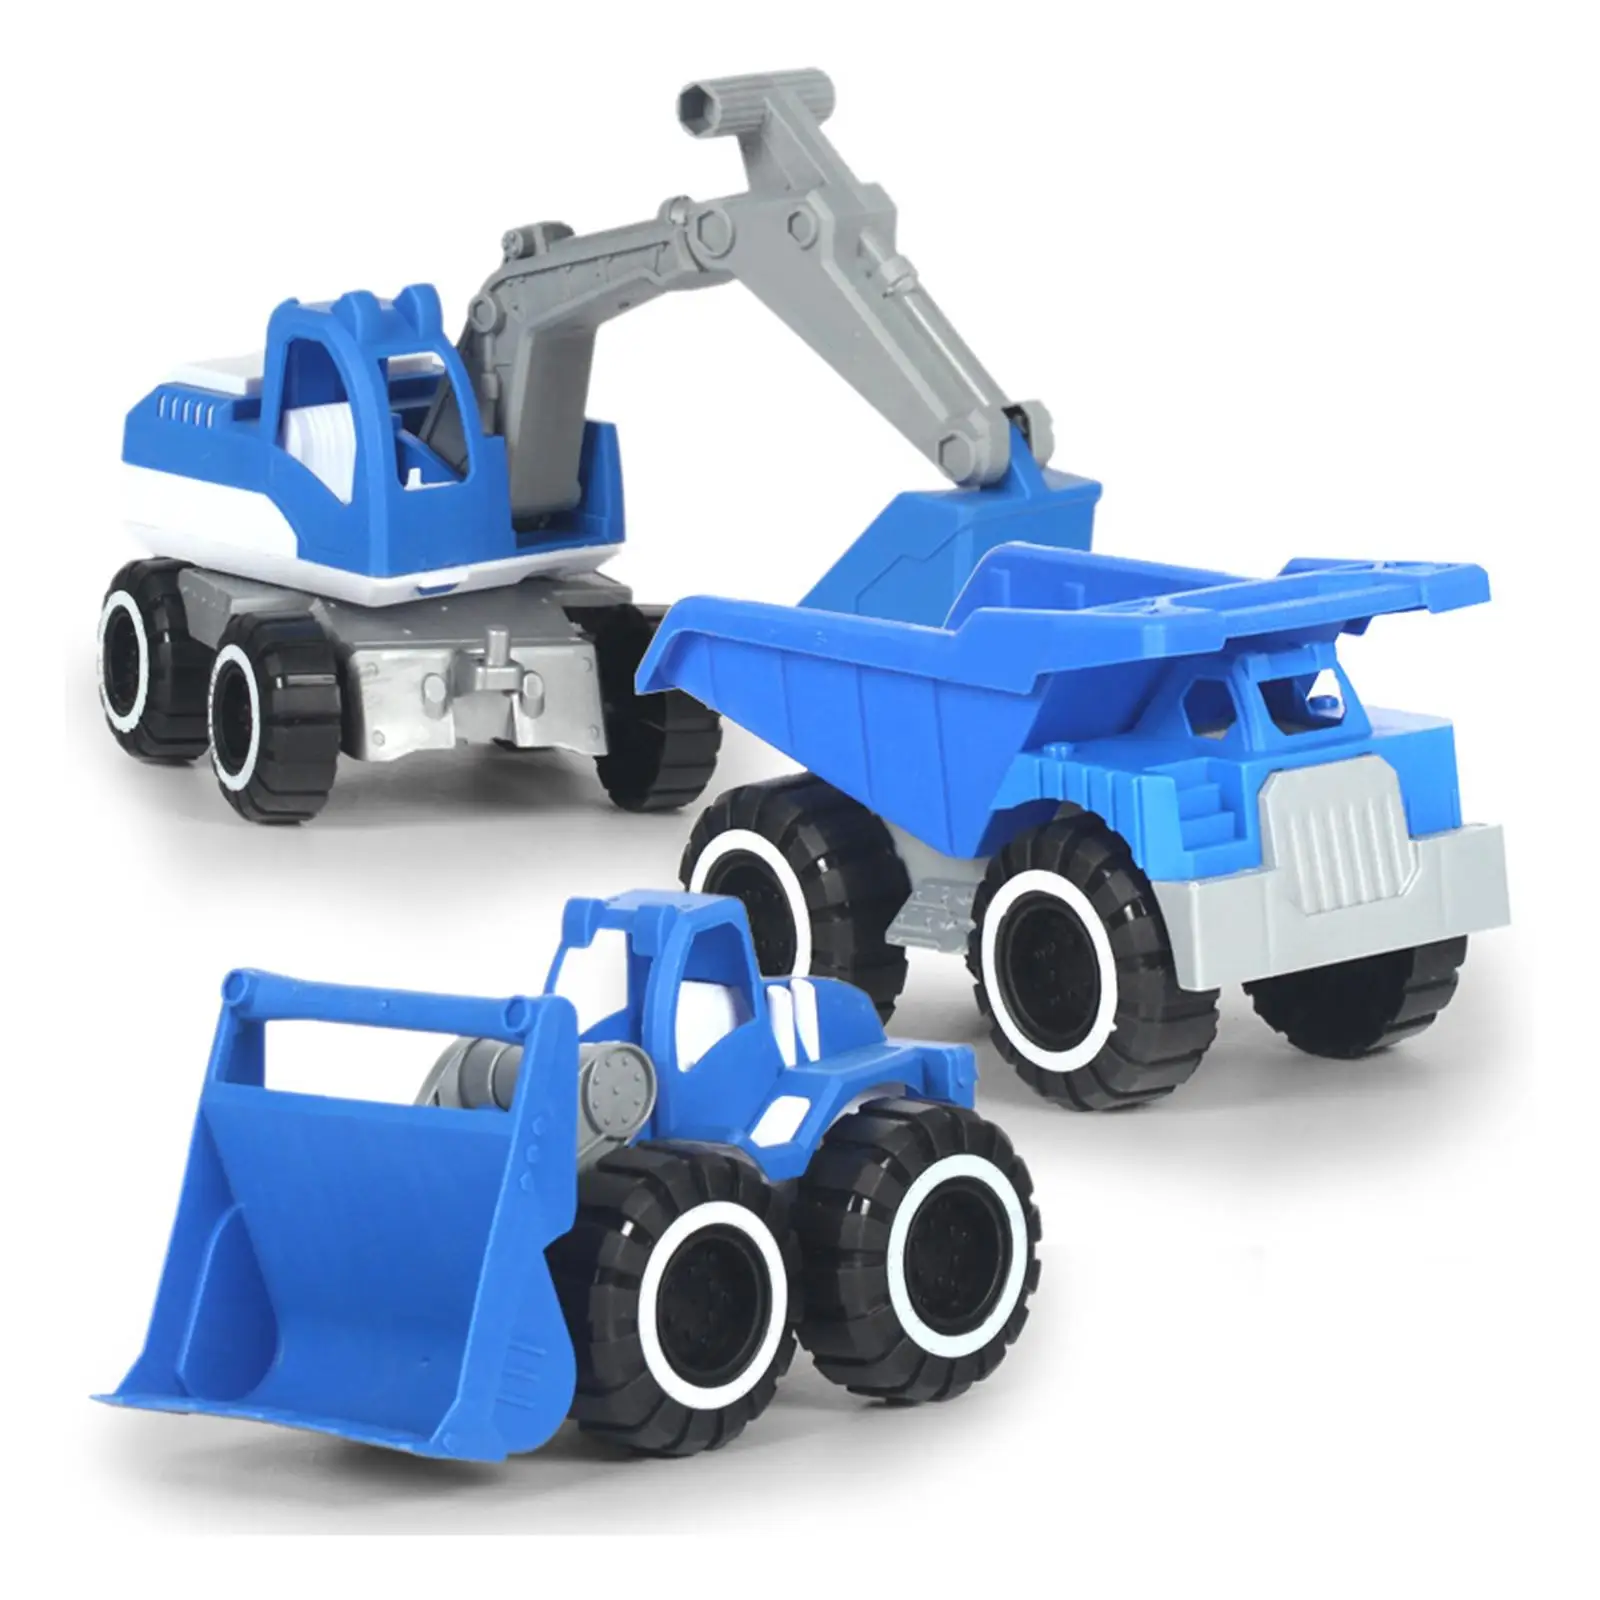 Экскаваторные транспортные средства, игрушки для раннего развития, мини-машинки, игрушечные инженерные модели для девочек, мальчиков старше 3 лет, подарки на день рождения